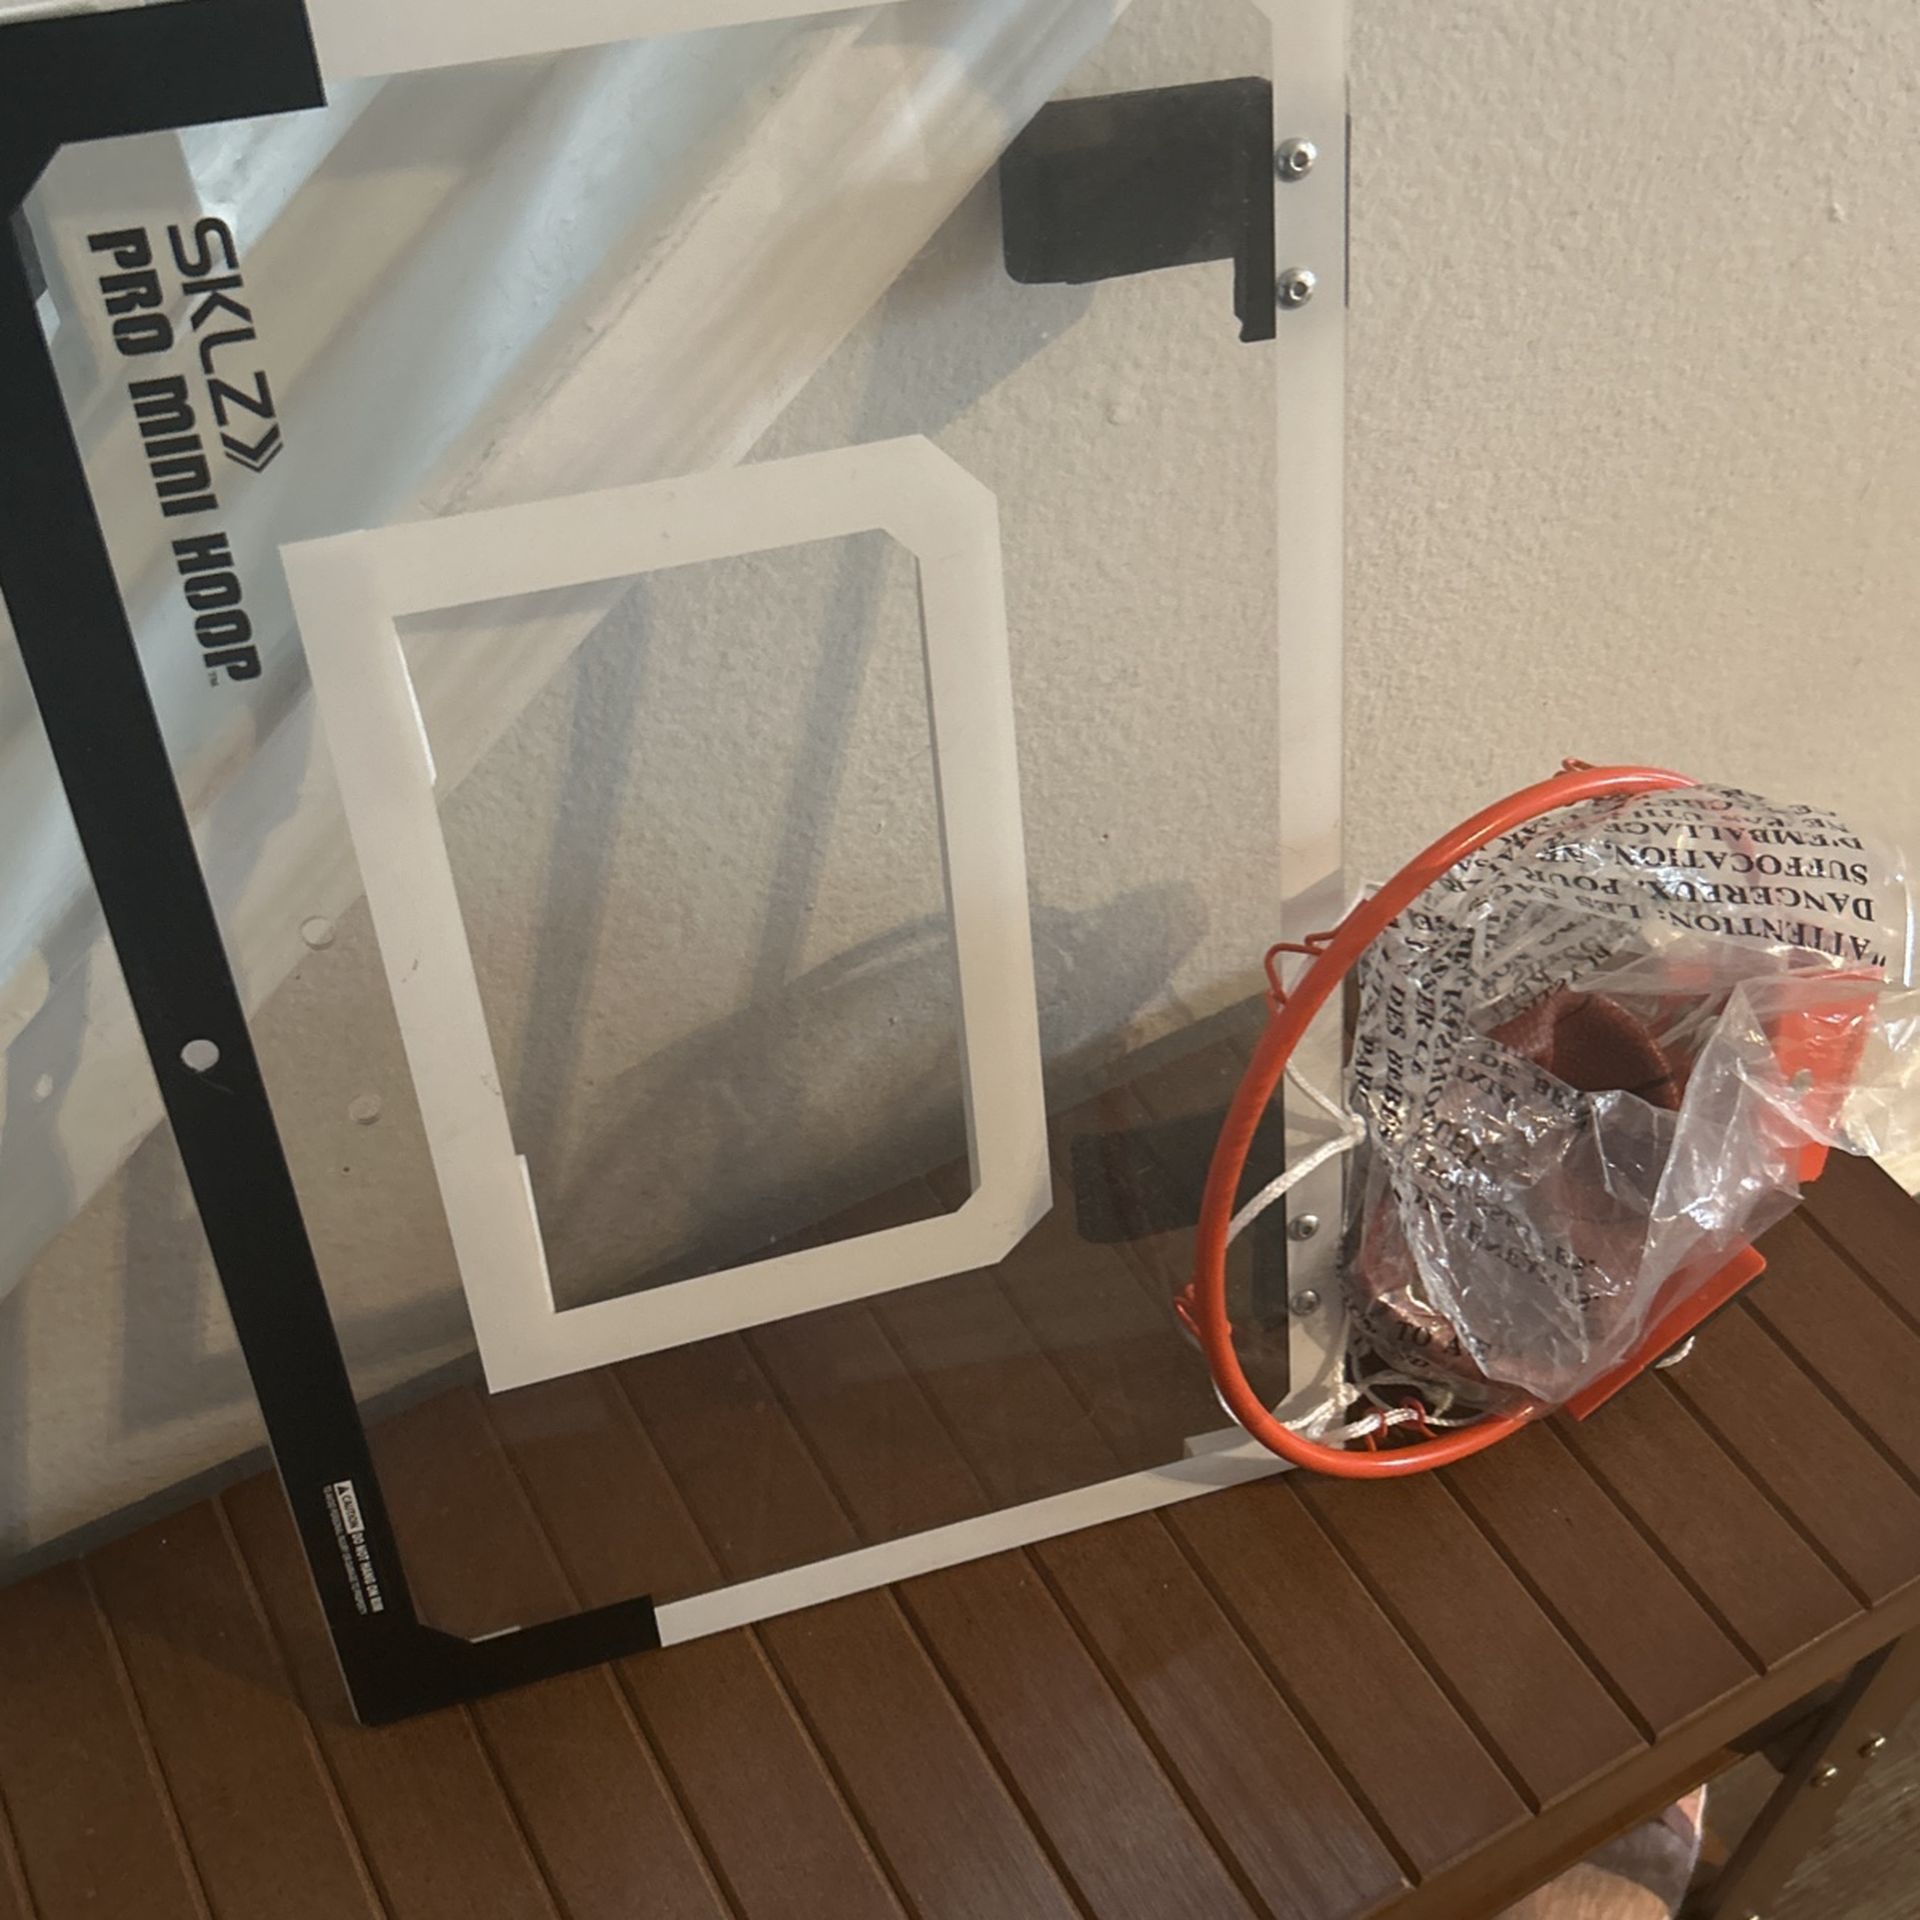 SKLZ  Pro mini Over The Door basketball Hoop